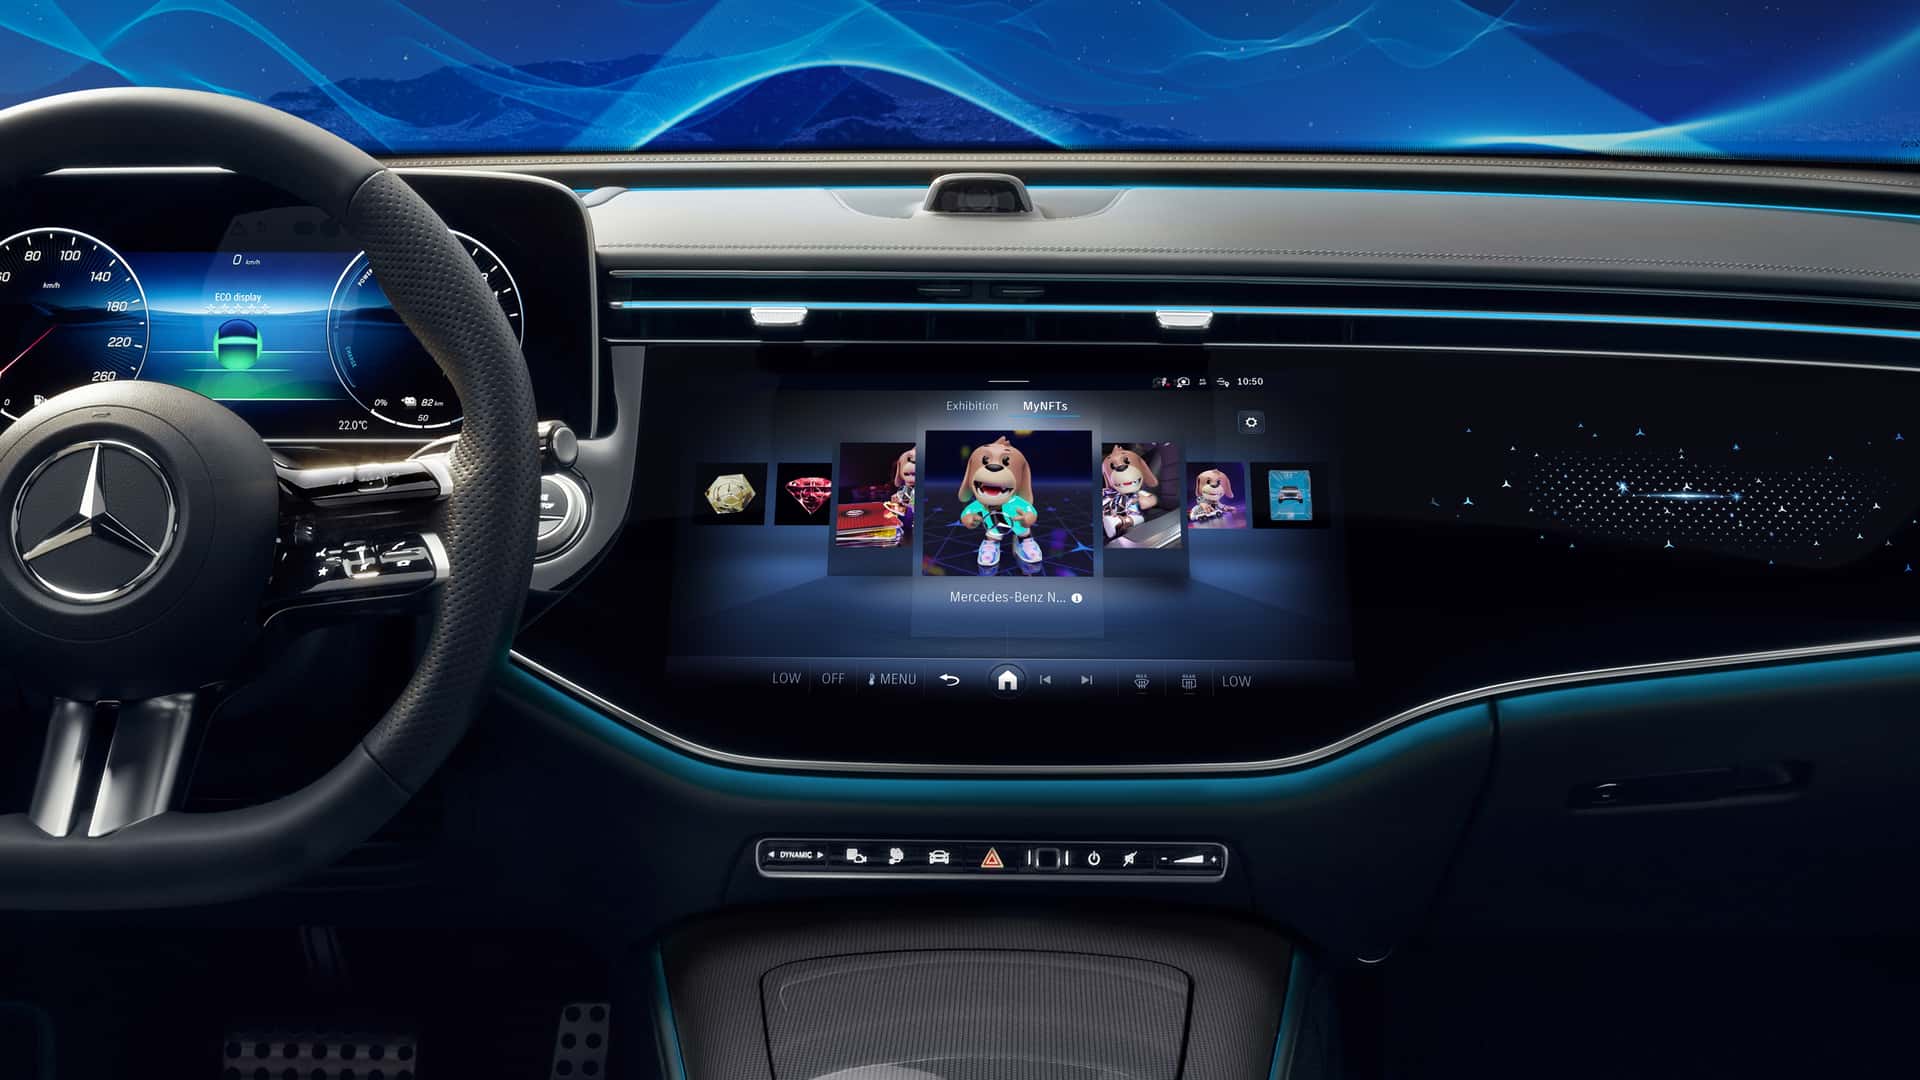 مرسيدس تكشف عن الجيل الجديد من نظام التشغيل لسياراتها بتقنيات مبتكرة جديدة 9